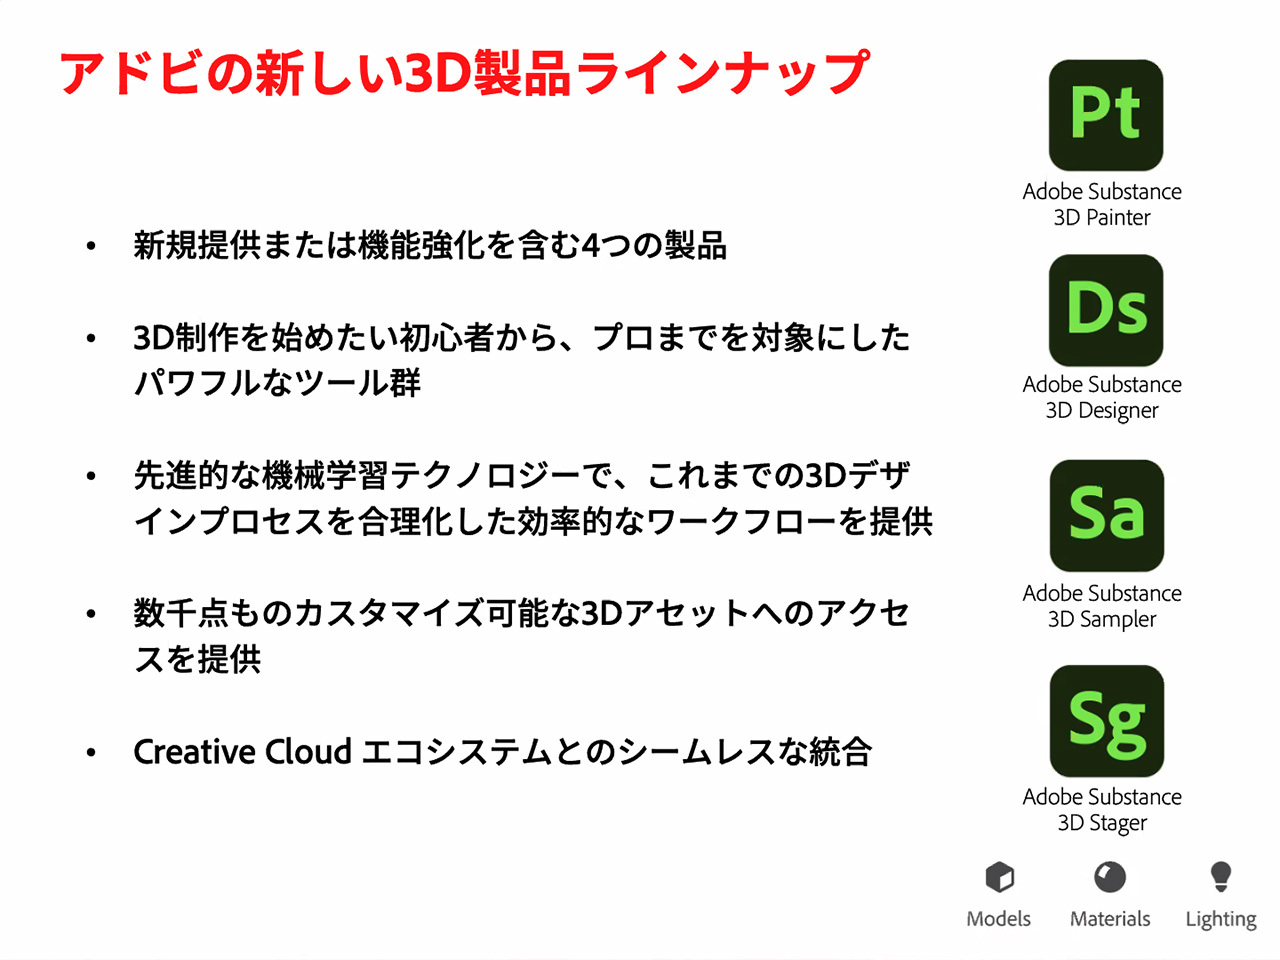 アドビ 新しい3d制作ツールセット Substance 3d Collection 発表 Cnet Japan